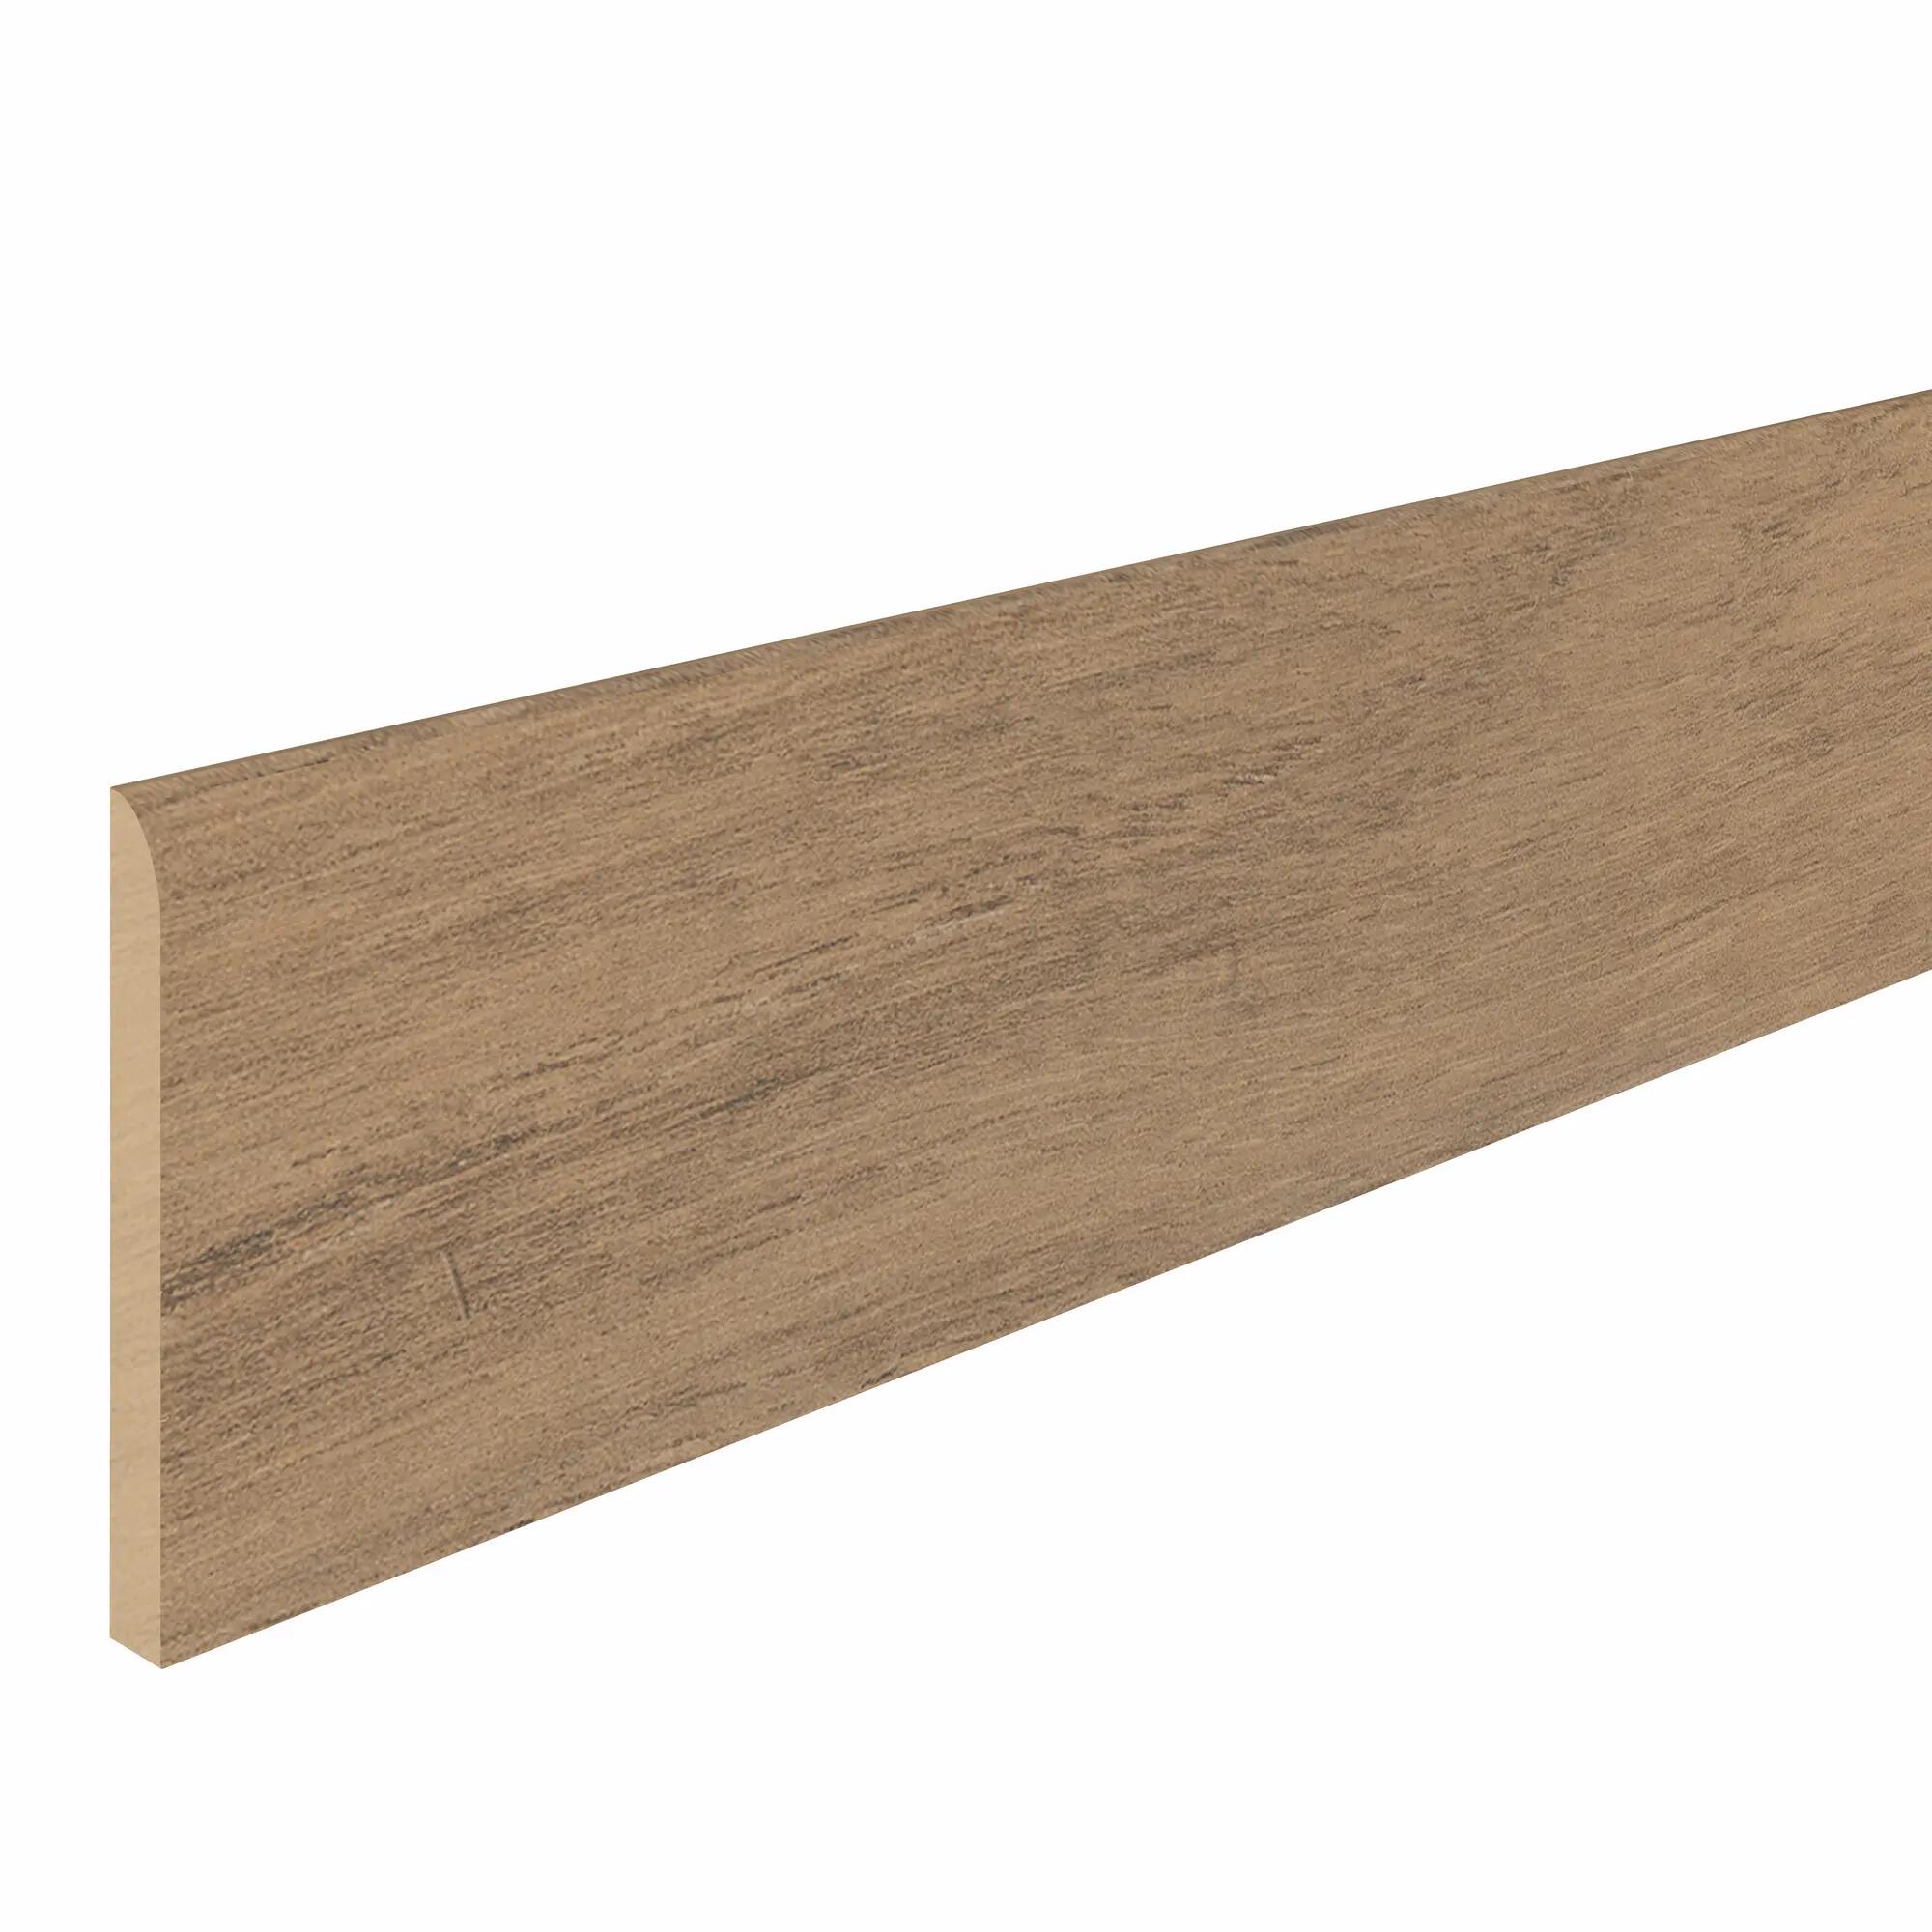 Rodapié marrón - Q 12-60H - BOLTA - de madera / de PVC / rectangular